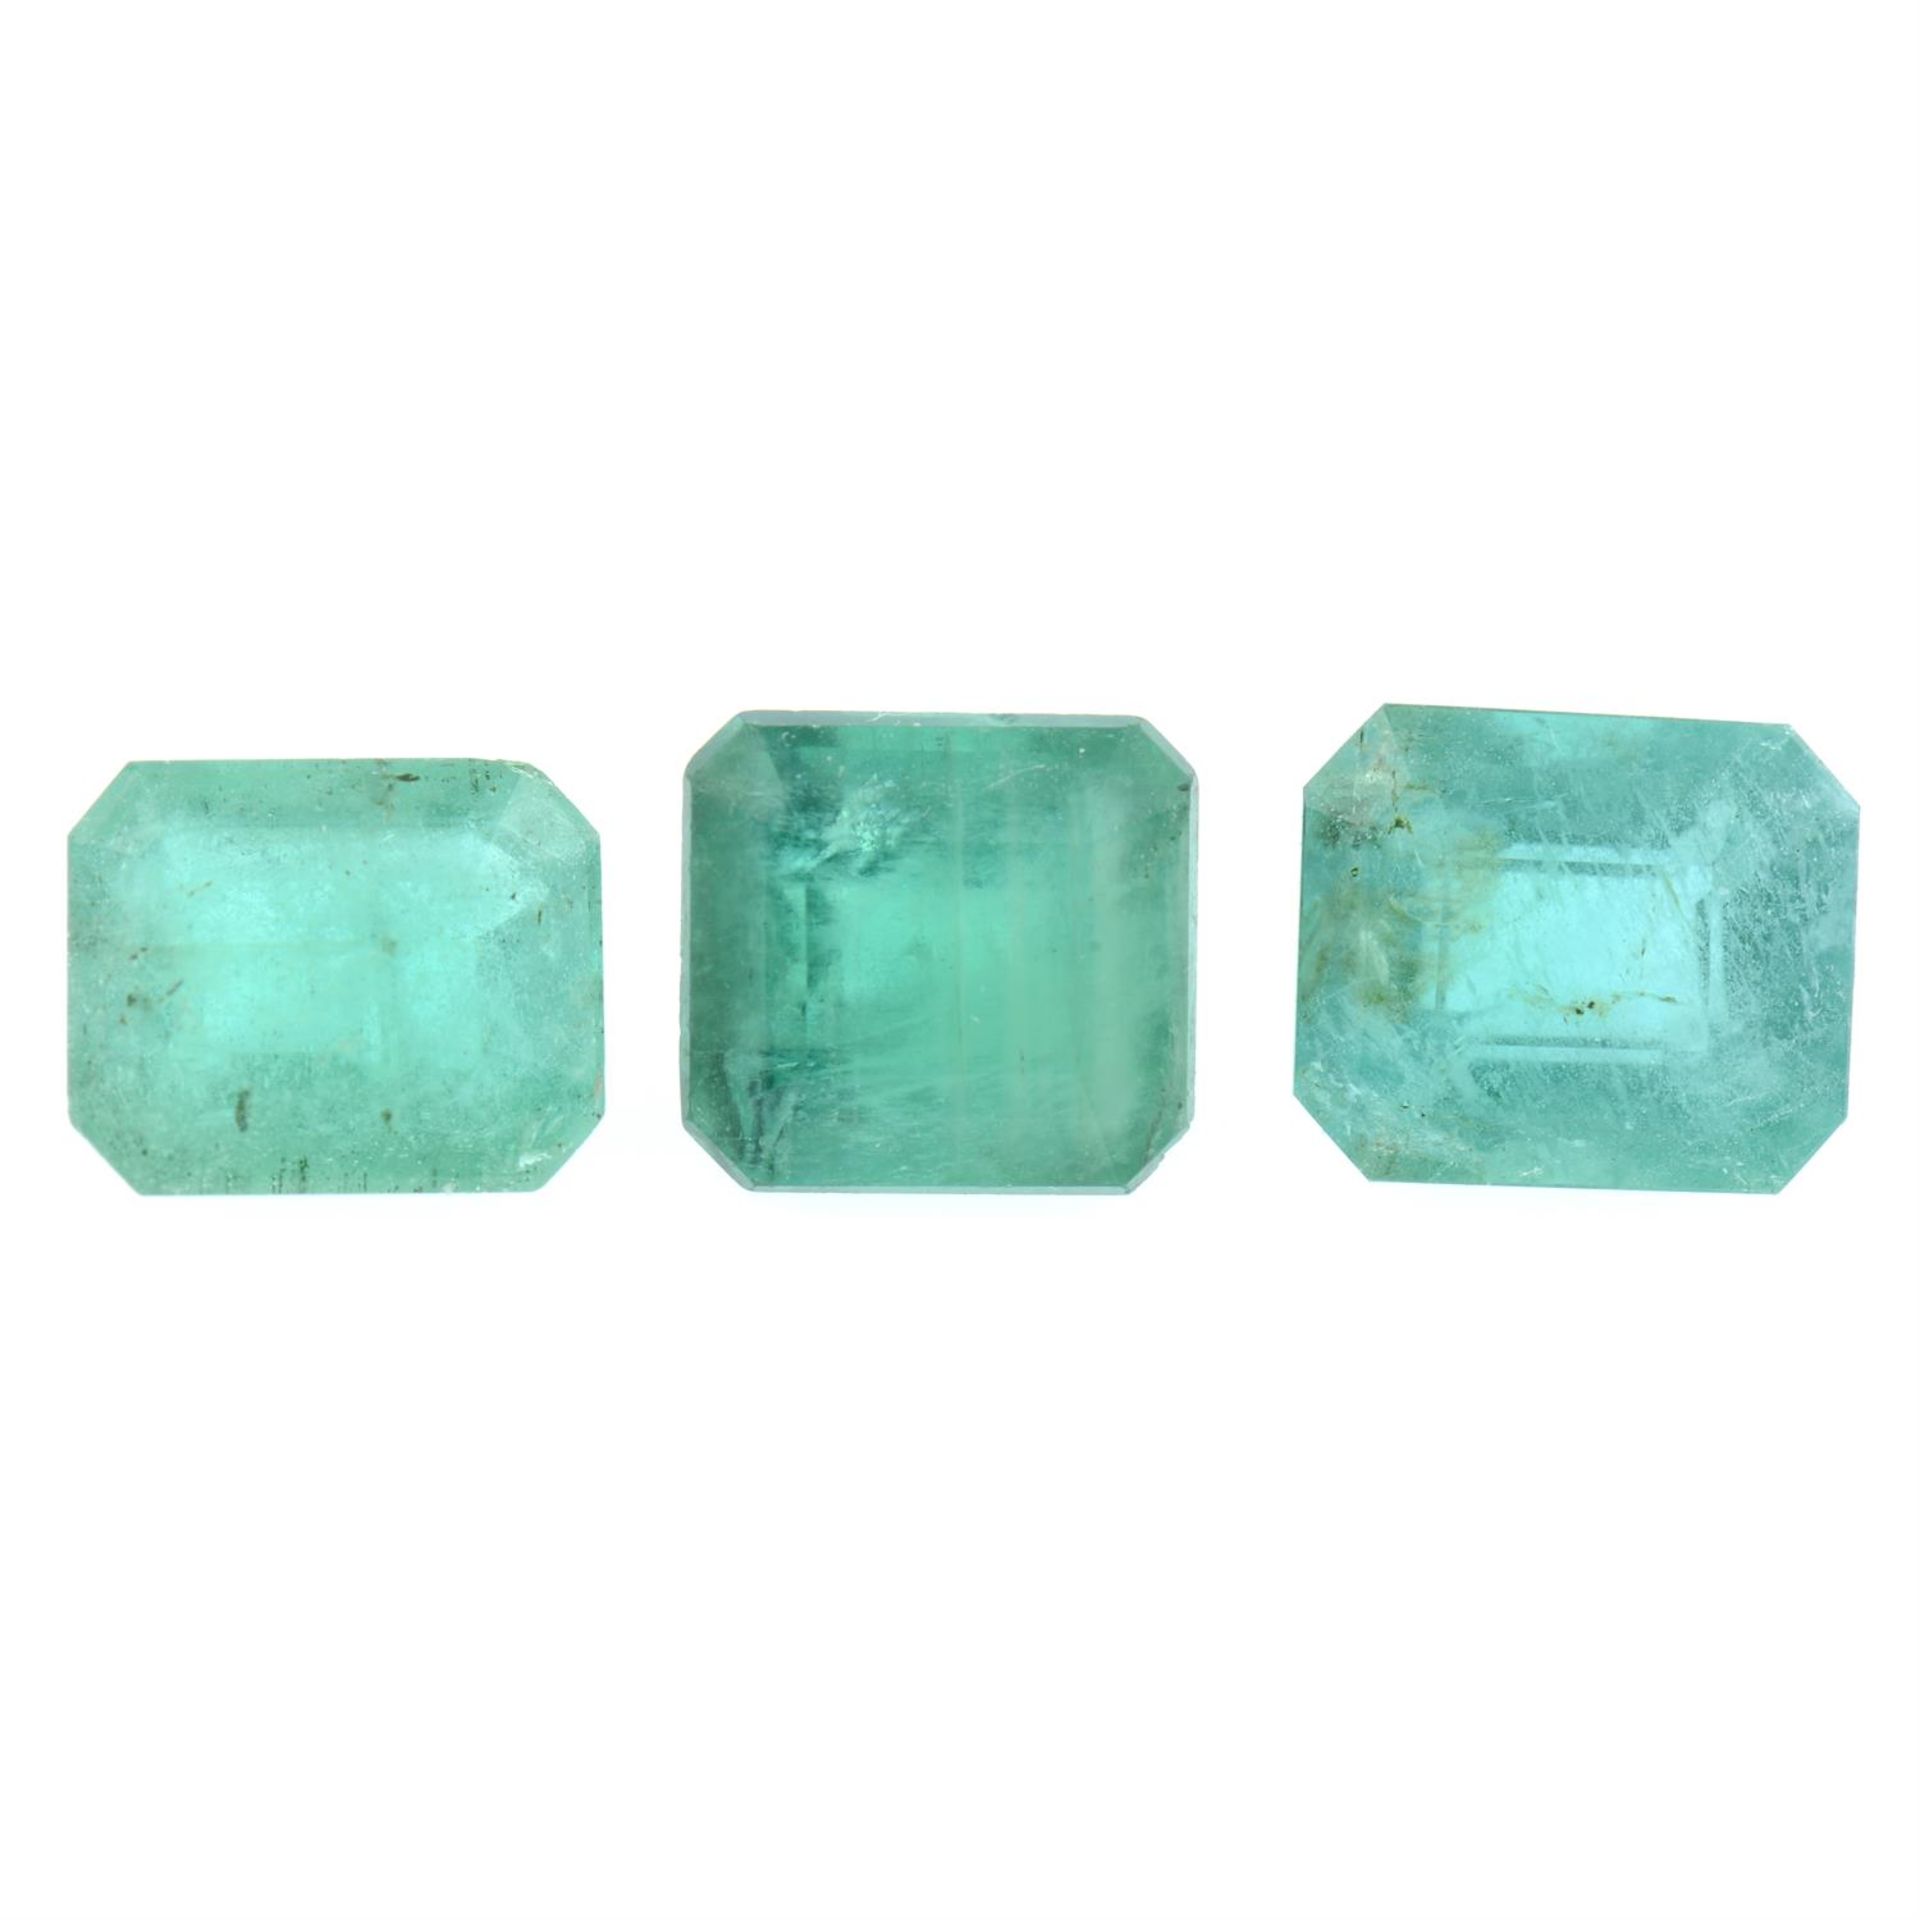 Three rectangular-shape emeralds, 3.08ct